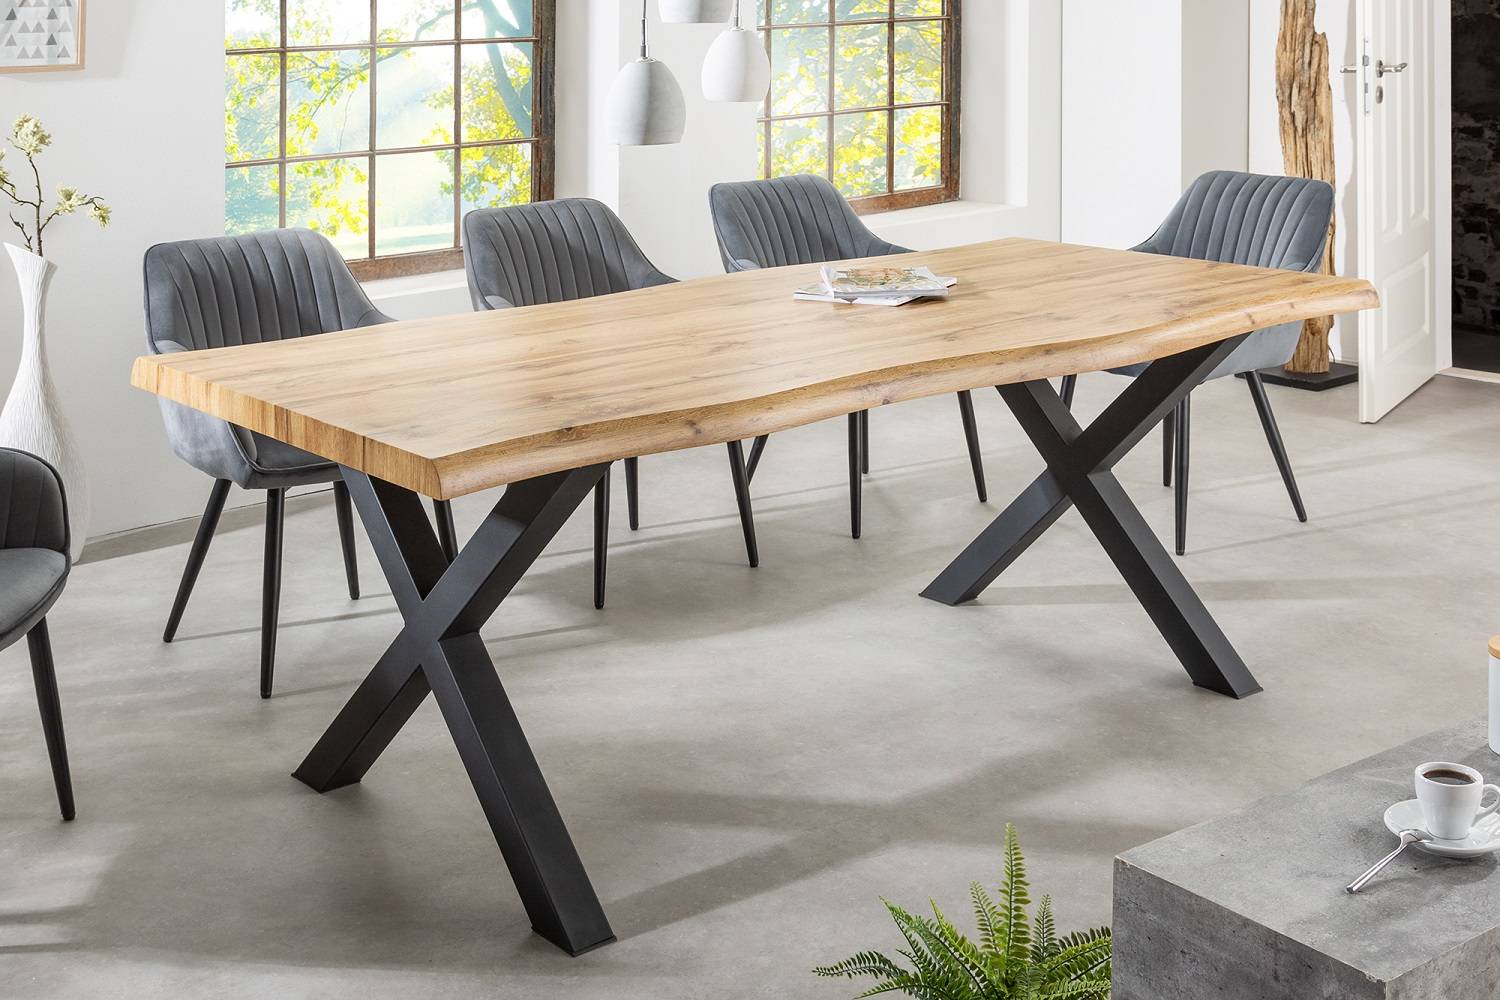 LuxD Designový jídelní stůl Kaniesa 180 cm hnědý - vzor divoký dub  -Skladem